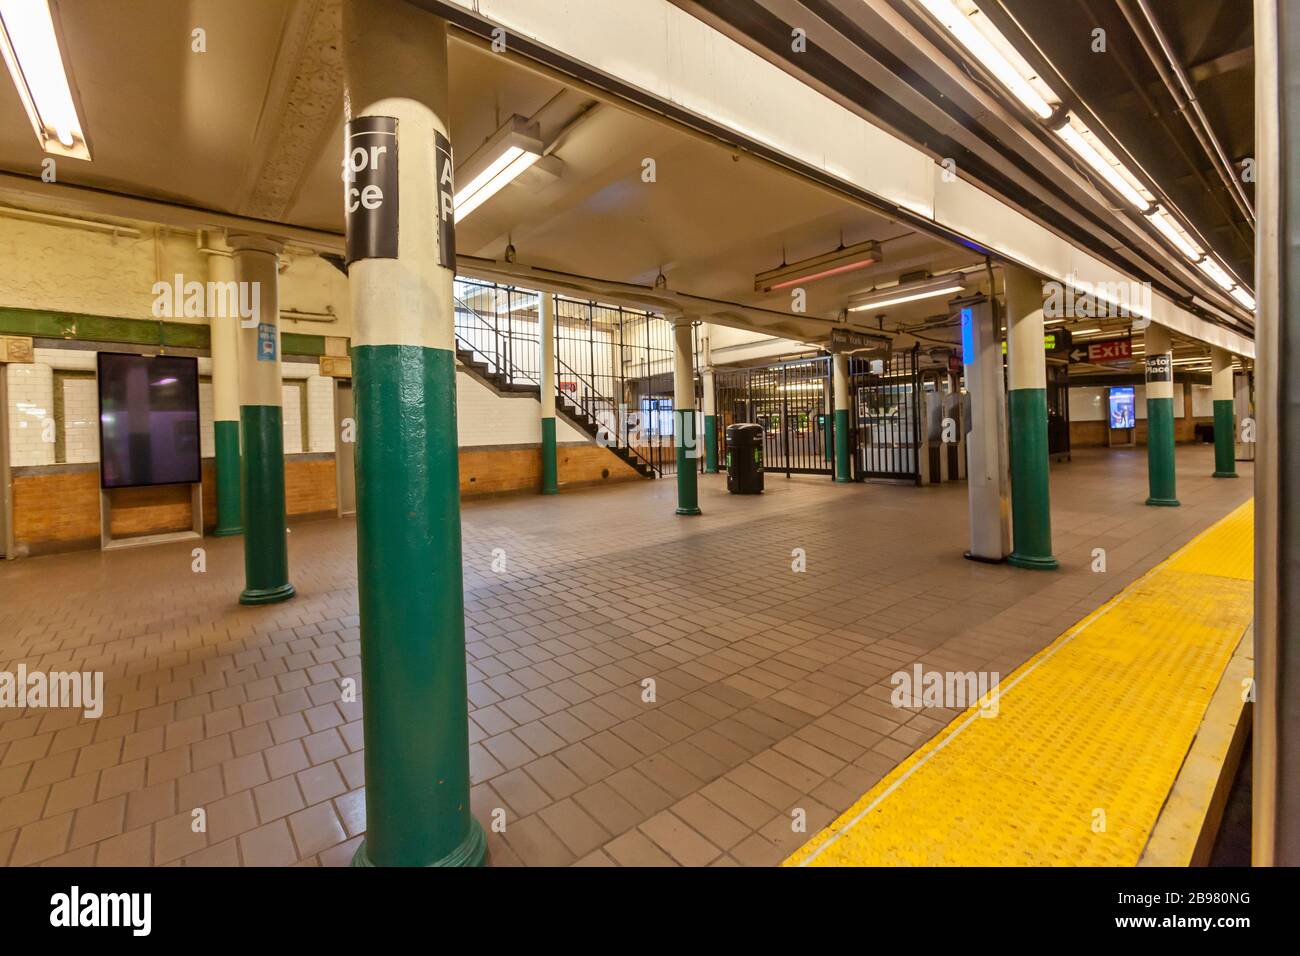 Very few passengers riding the subway in New York City because of COVID-19, Coronavirus. Stock Photo